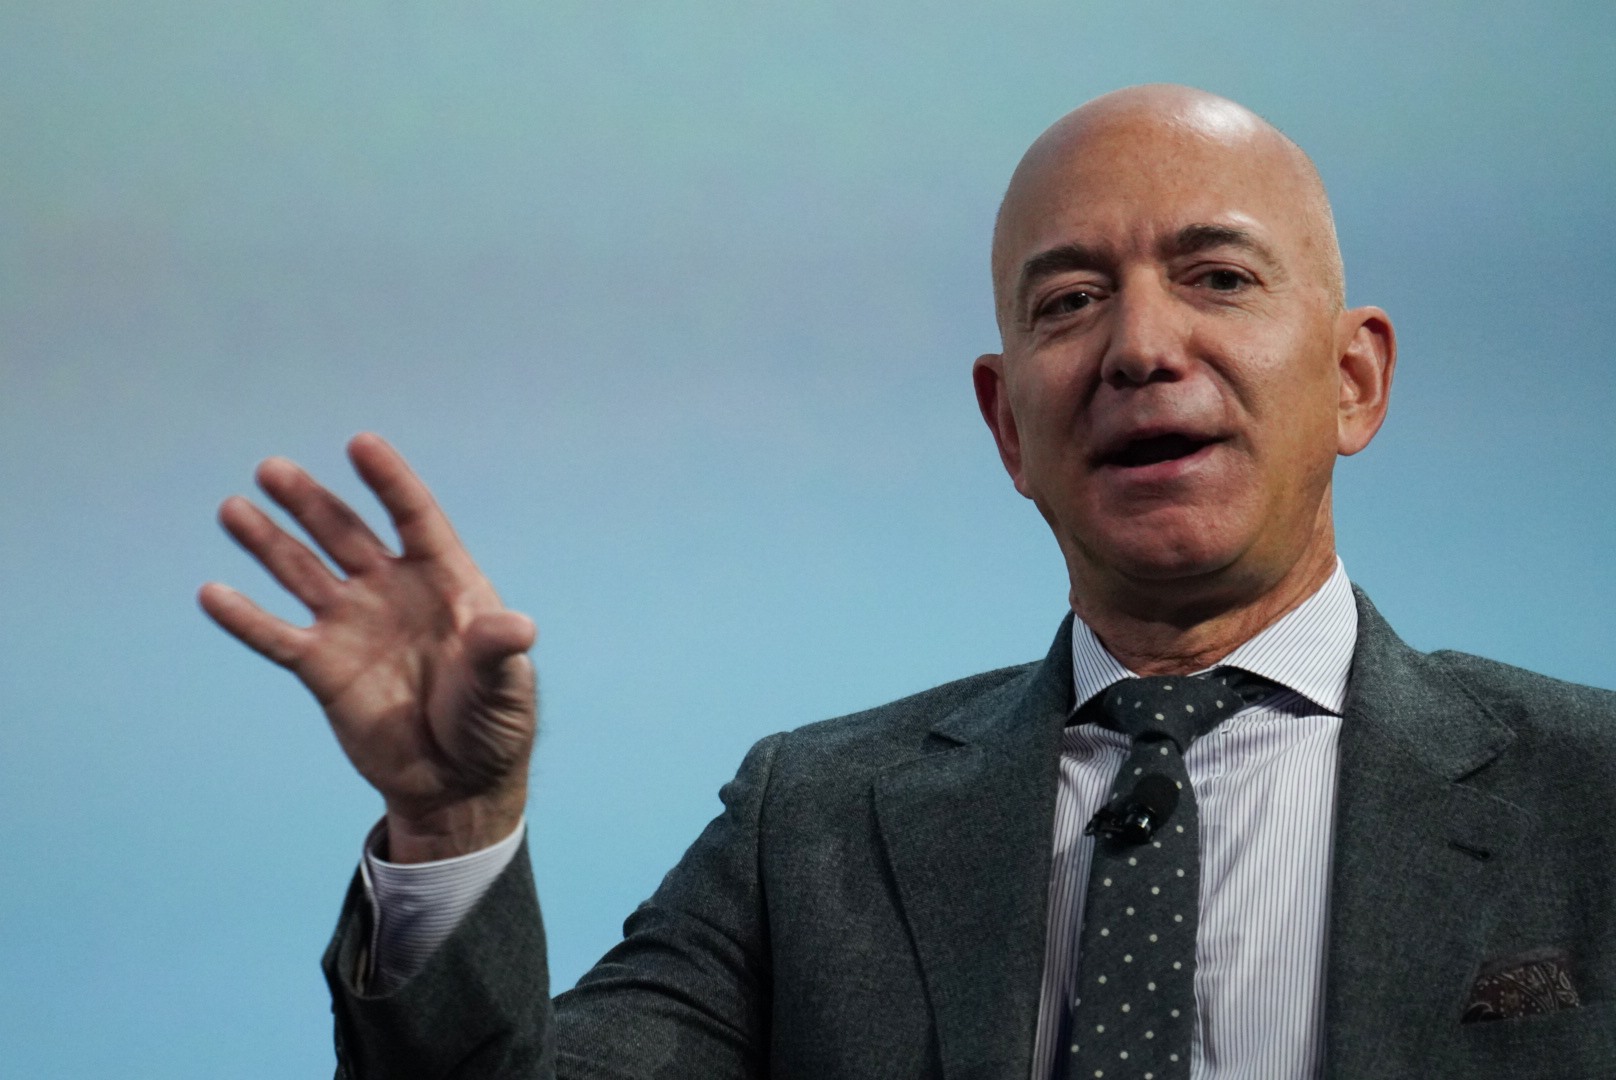 Đứng đầu danh sách là Jeff Bezos - CEO Amazon, chủ sở hữu của Washington Post. Ảnh: Techcrunch